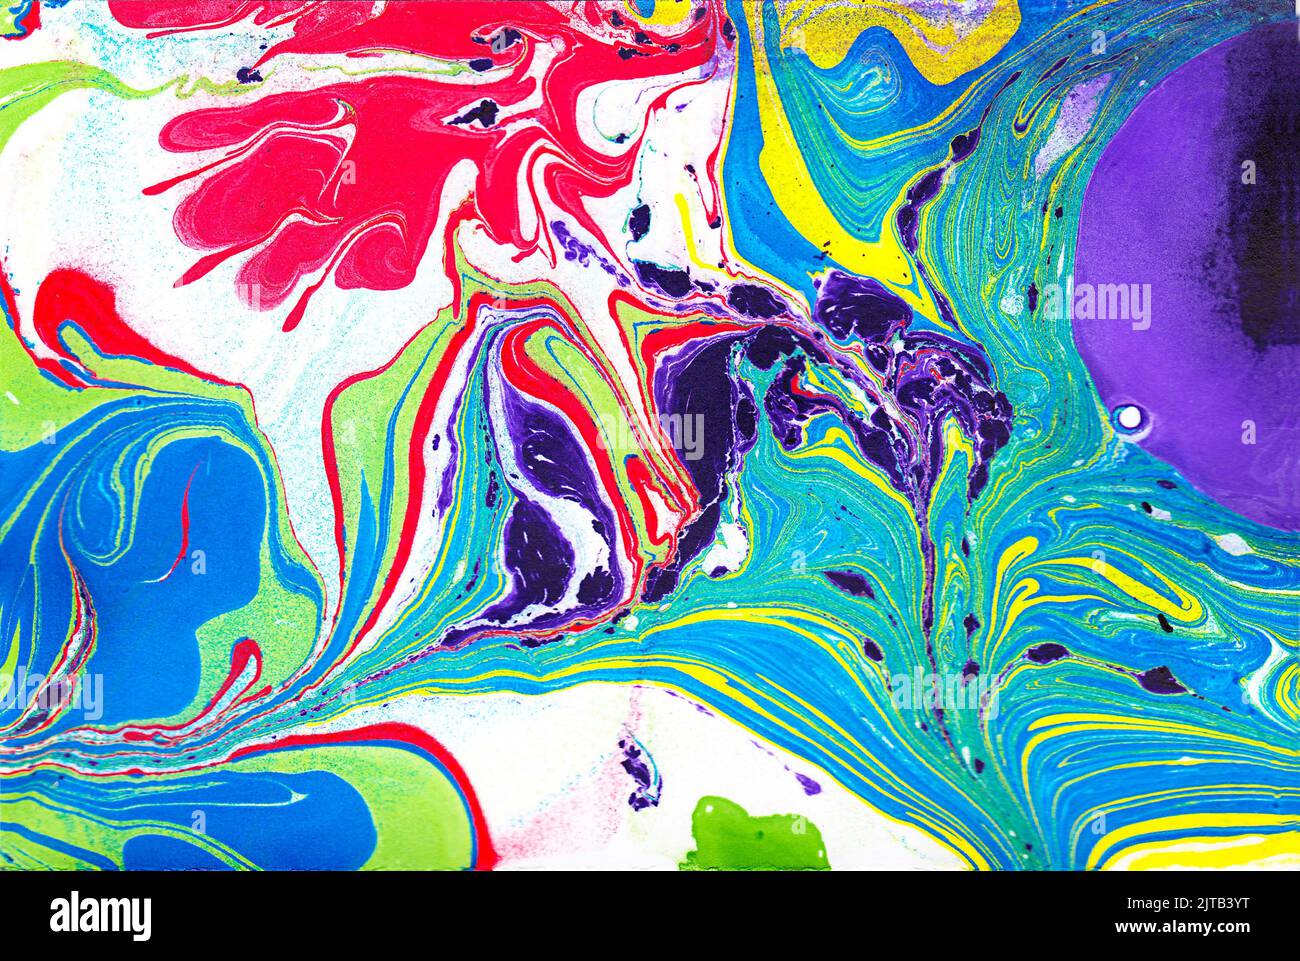 Ein handbemalter Abstrakt mit mehreren sehr hellen Farben und aus speziellen Tinten. Es scheint durch ein Mikroskop geschossen zu werden, aber es war nicht. Stockfoto